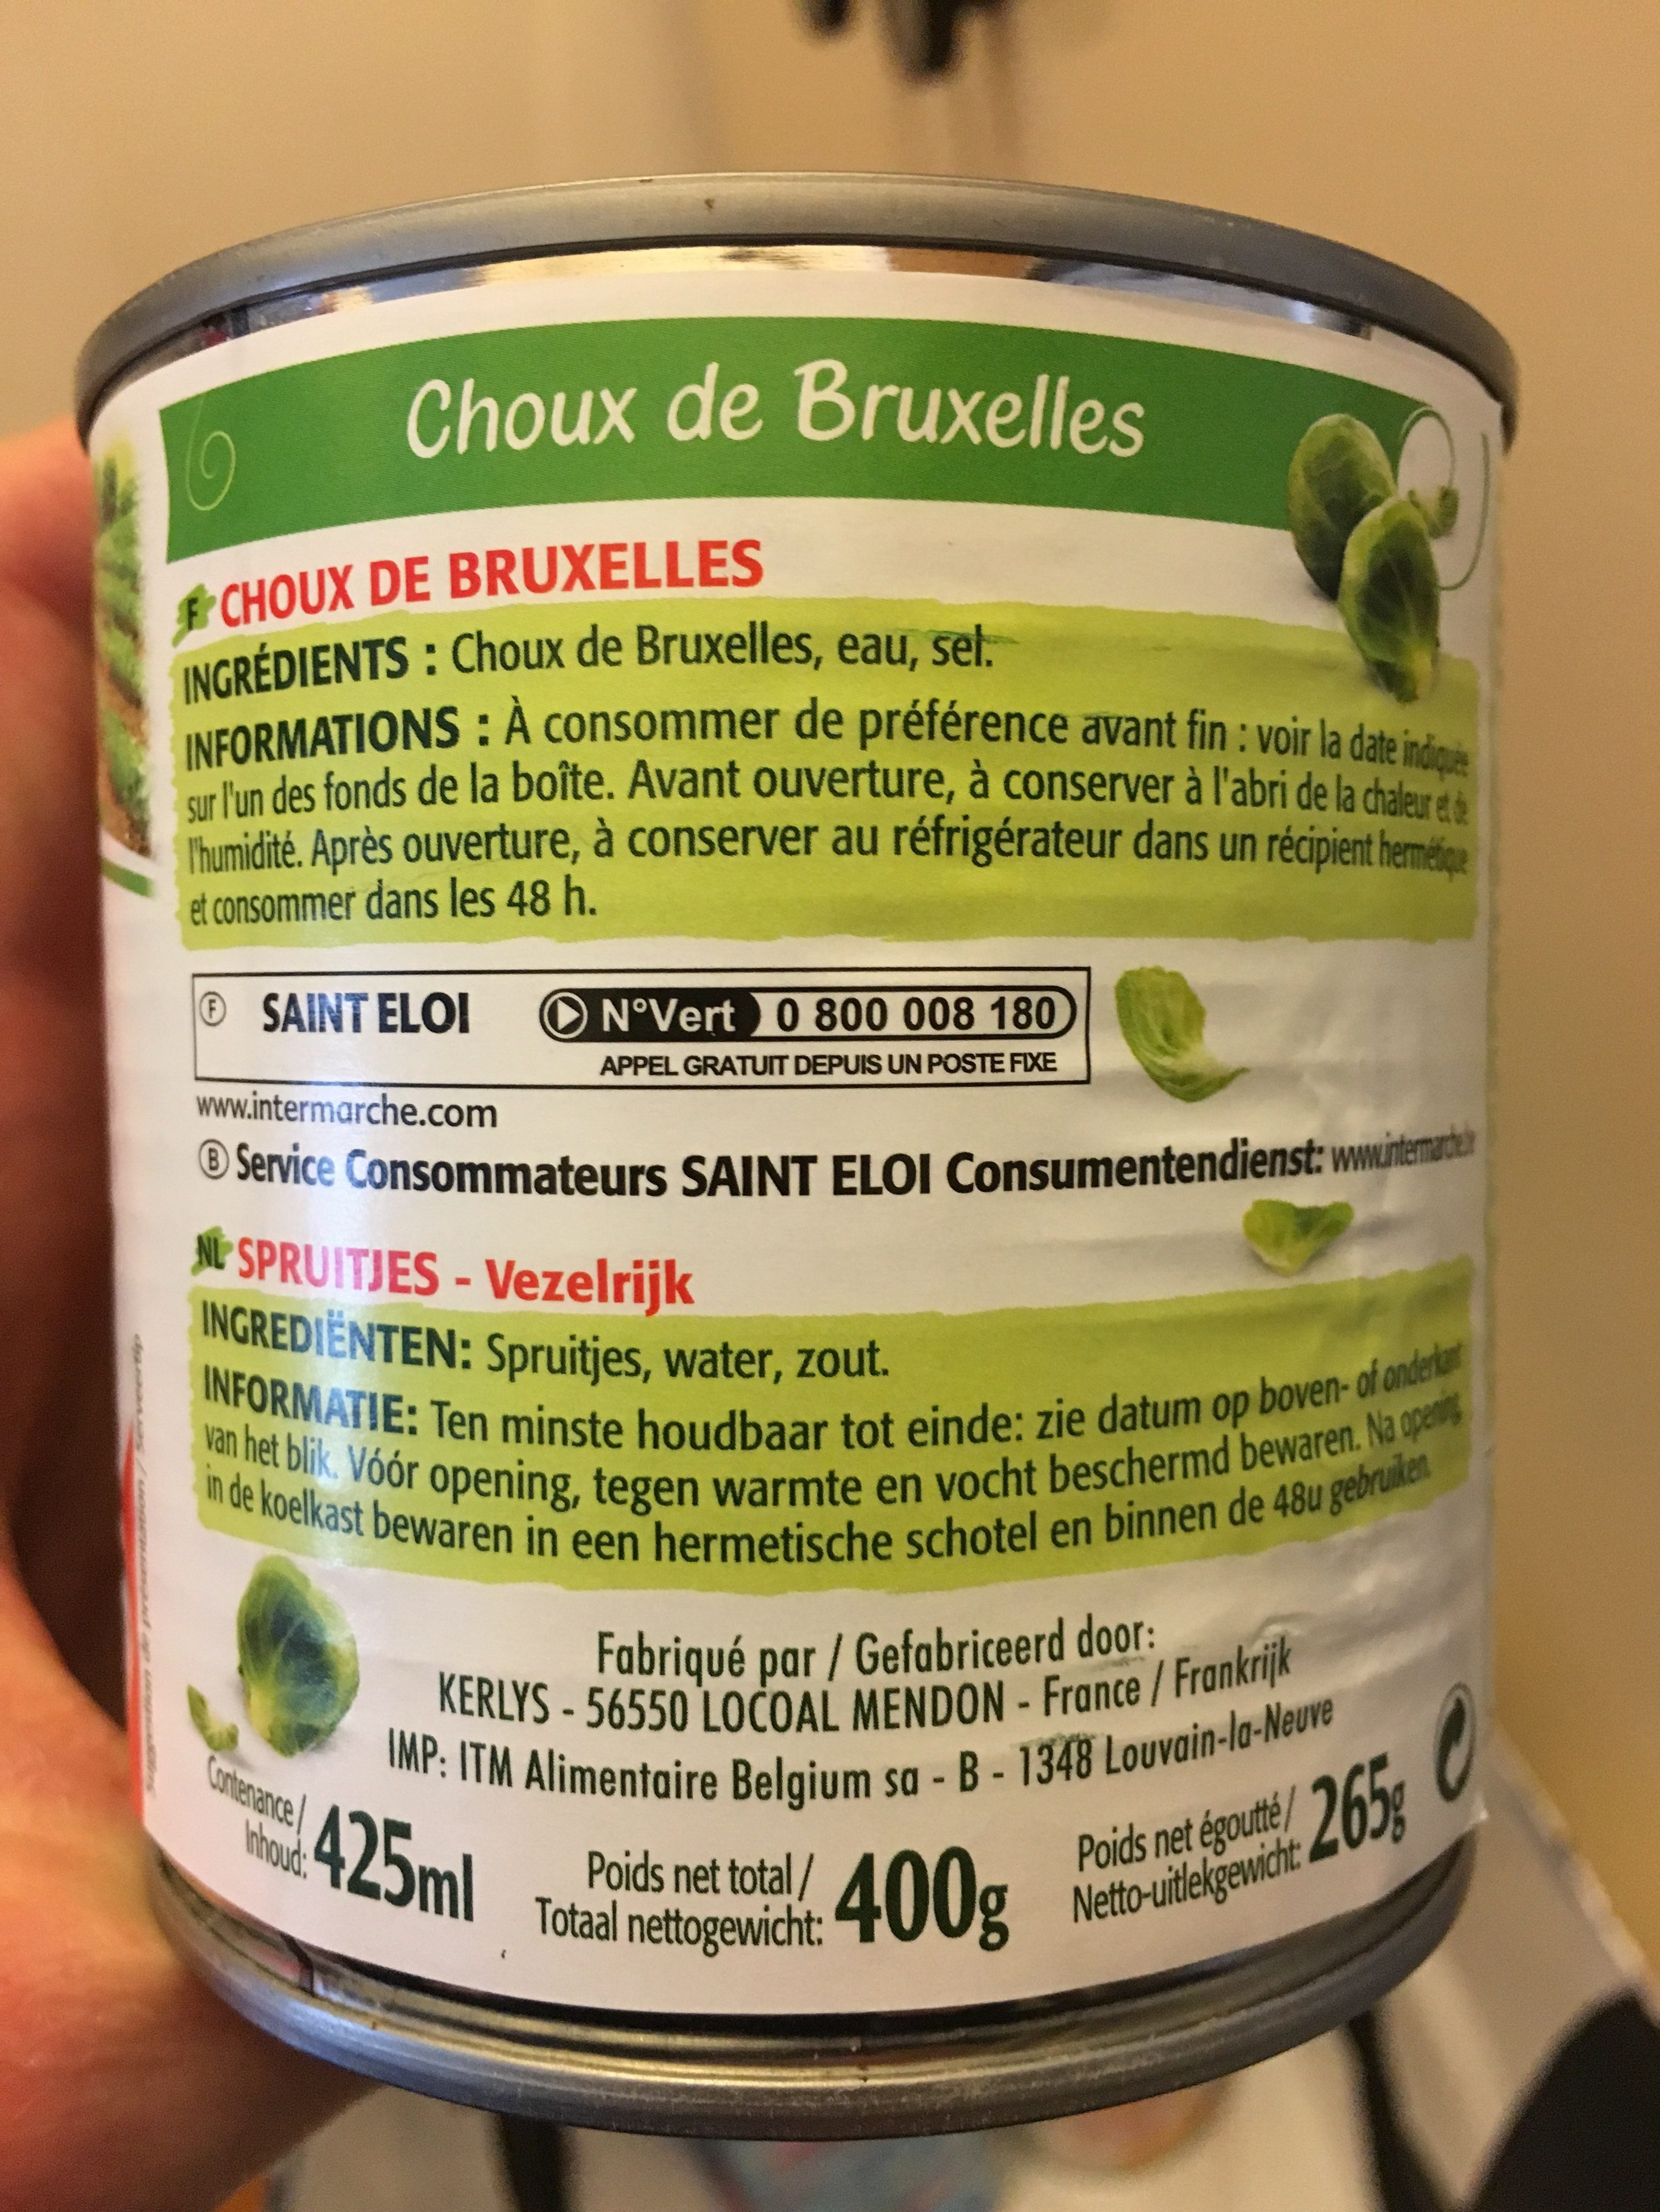 Choux de Bruxelles - Ingredients - fr